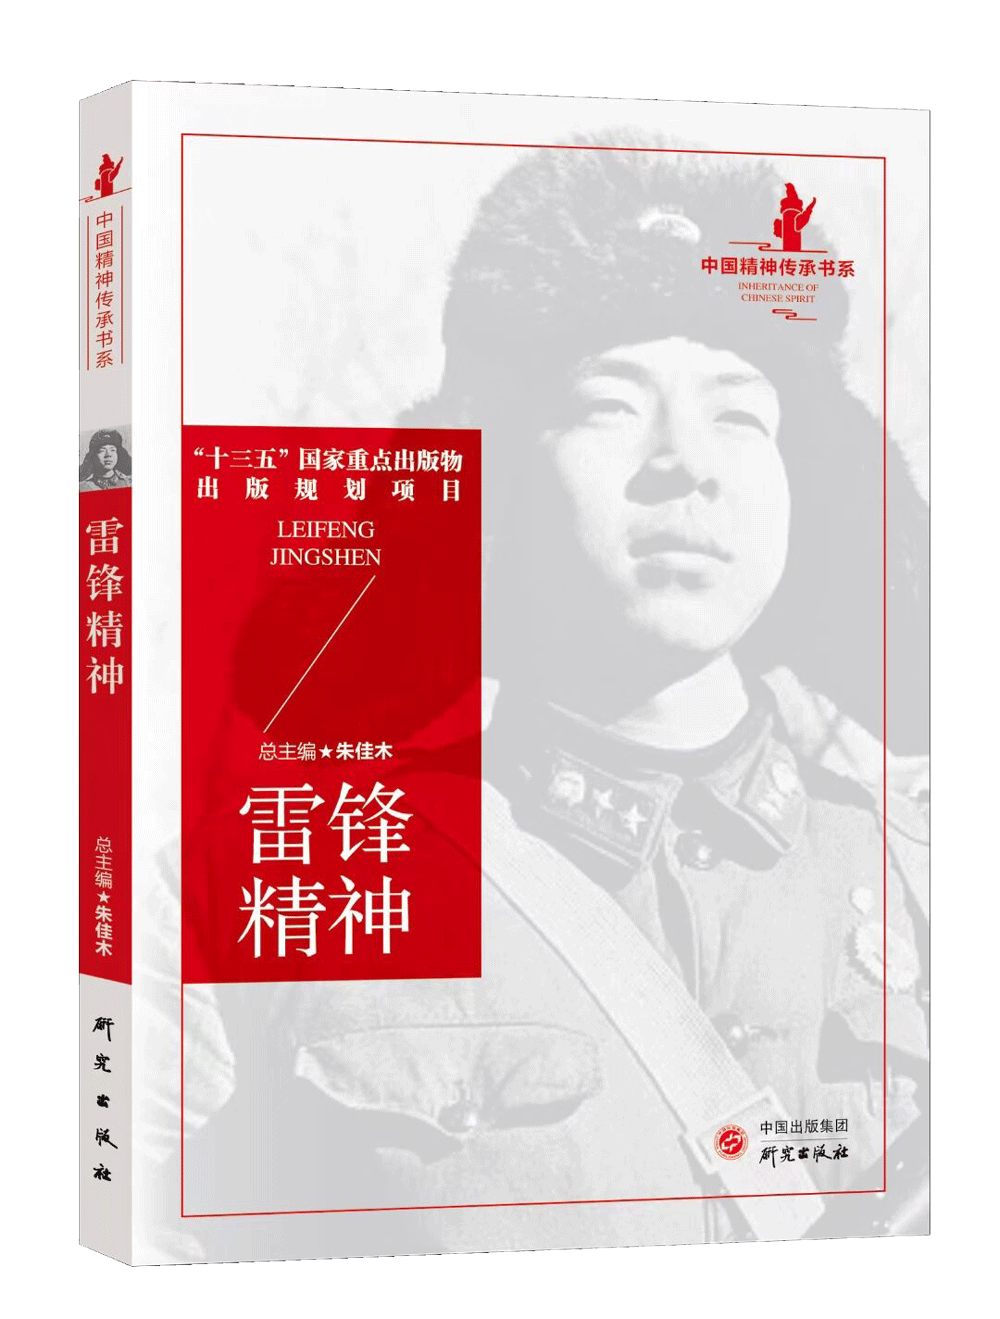 【建党100周年献礼】《中国精神传承》丛书——永恒的雷锋精神